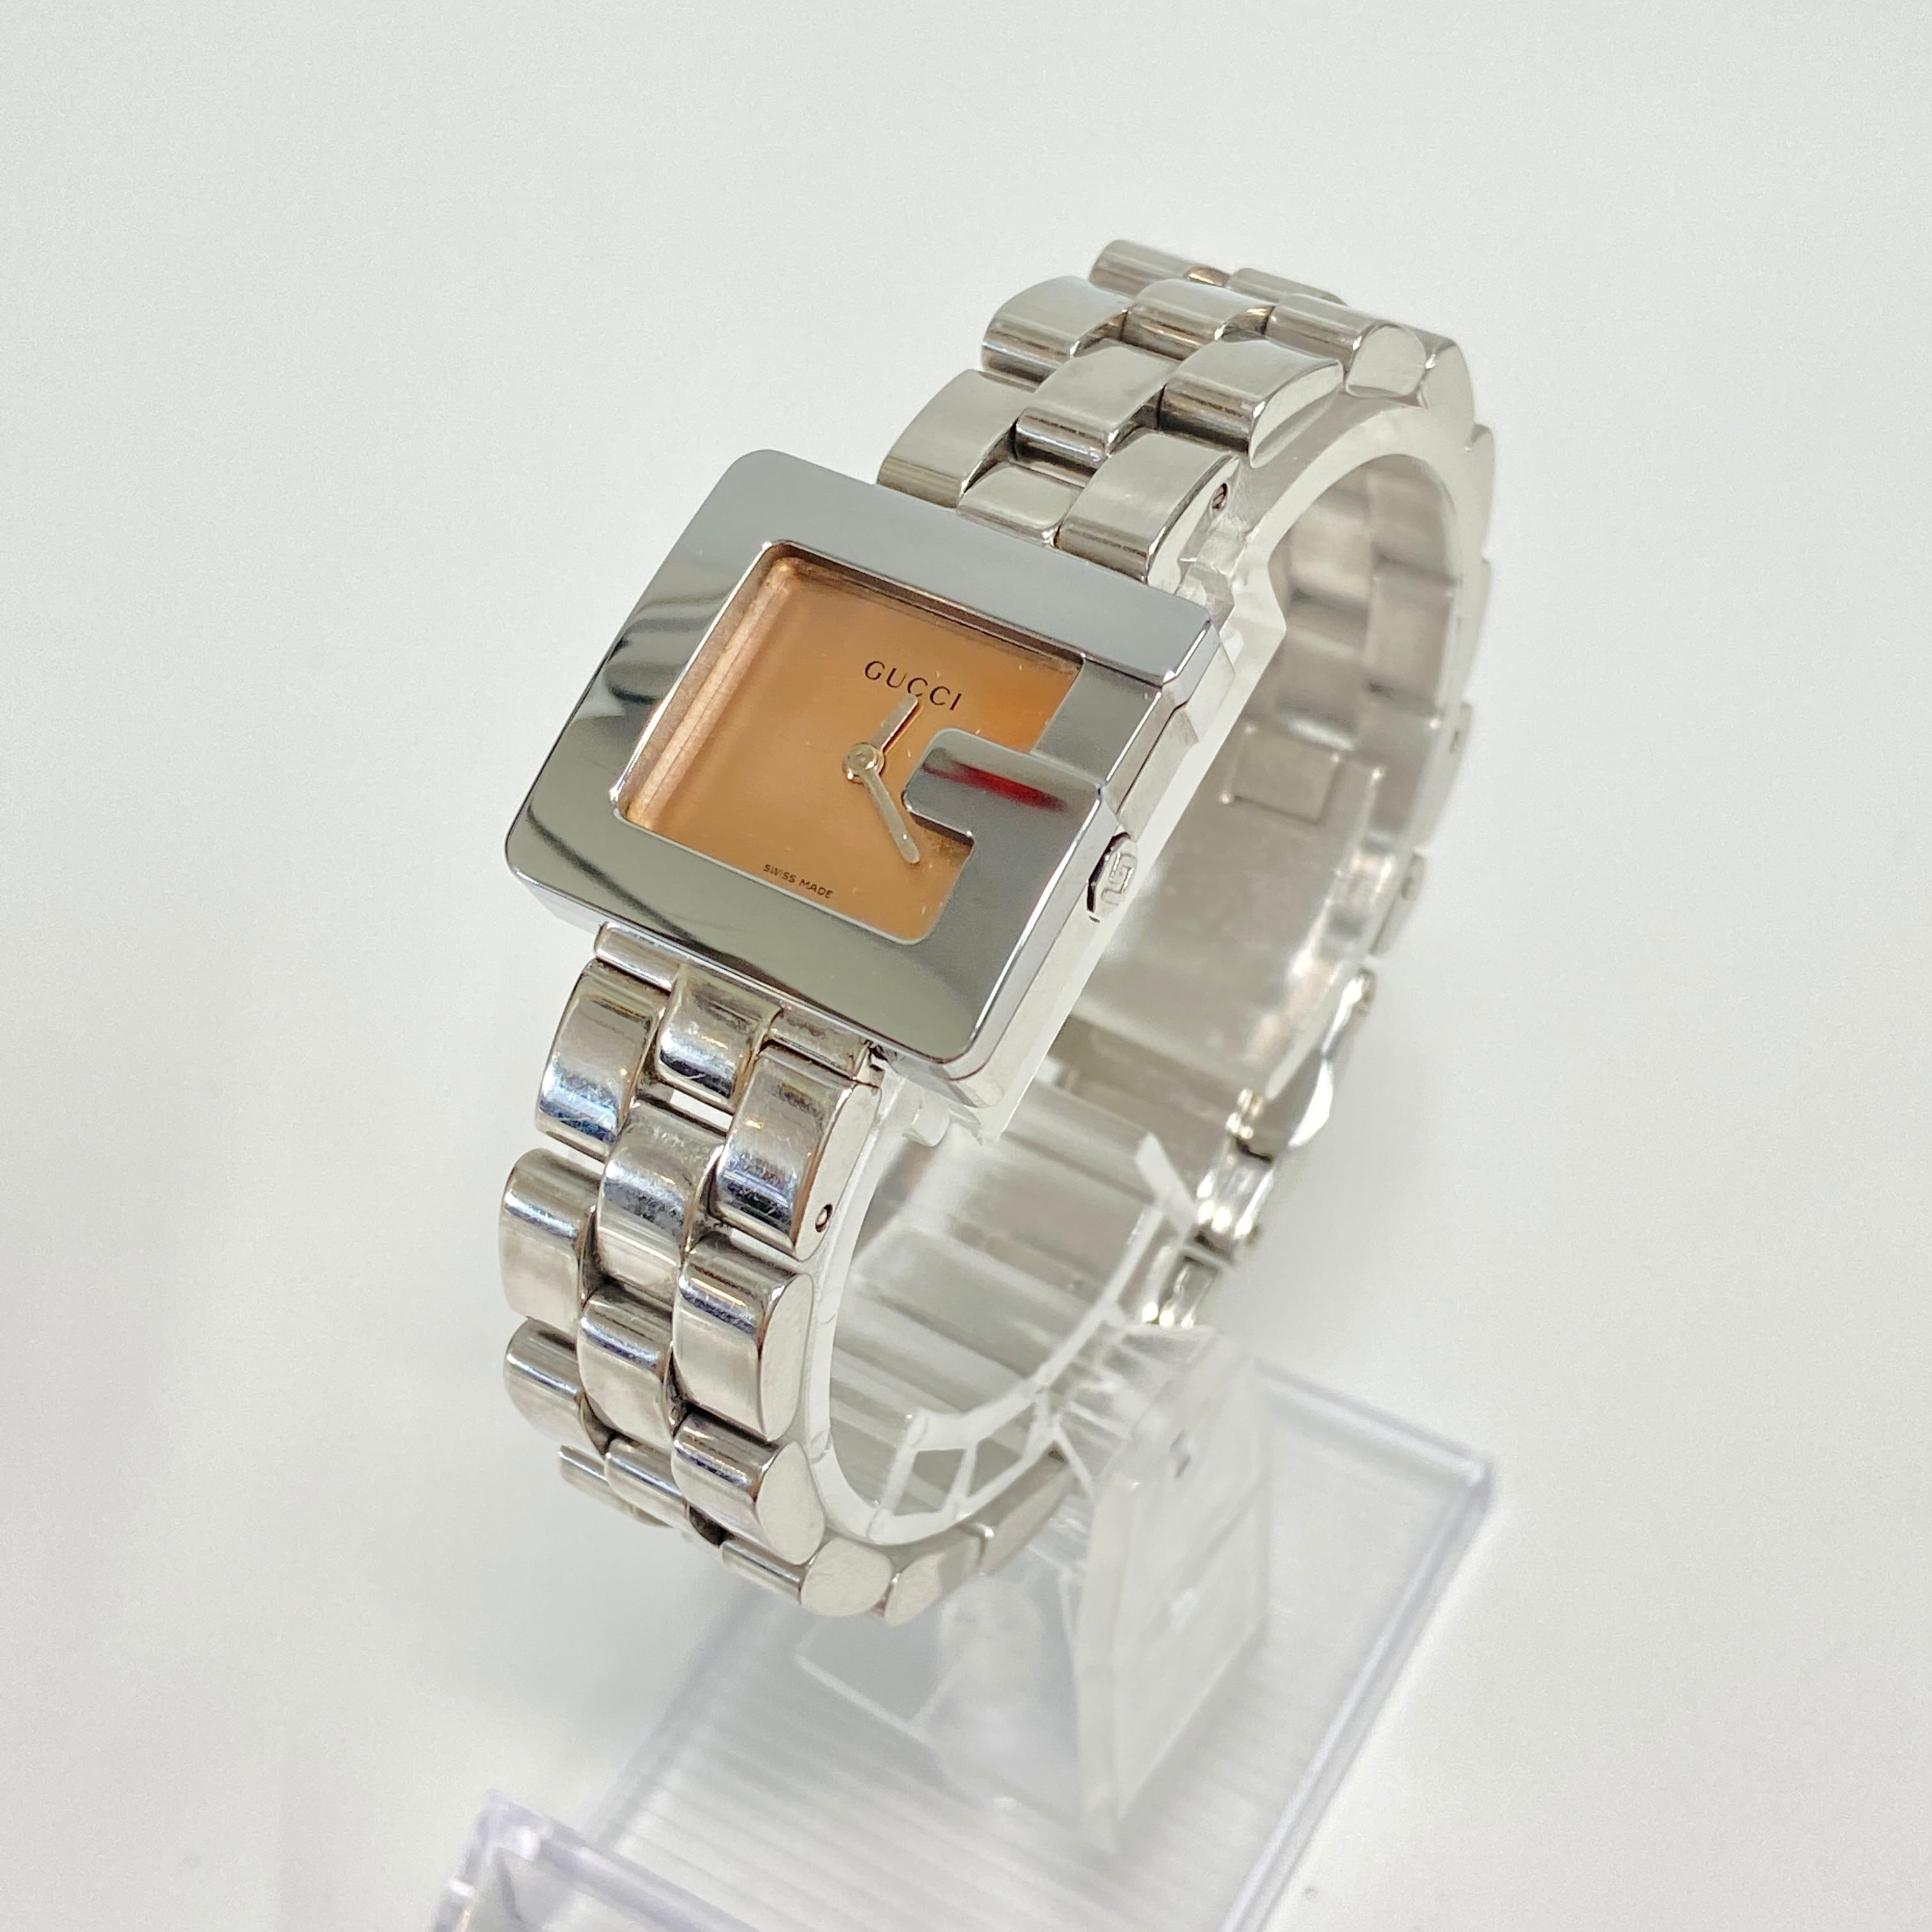 GUCCI グッチ 3600L クォーツ SS ピンク文字盤 腕時計 レディース 9206 